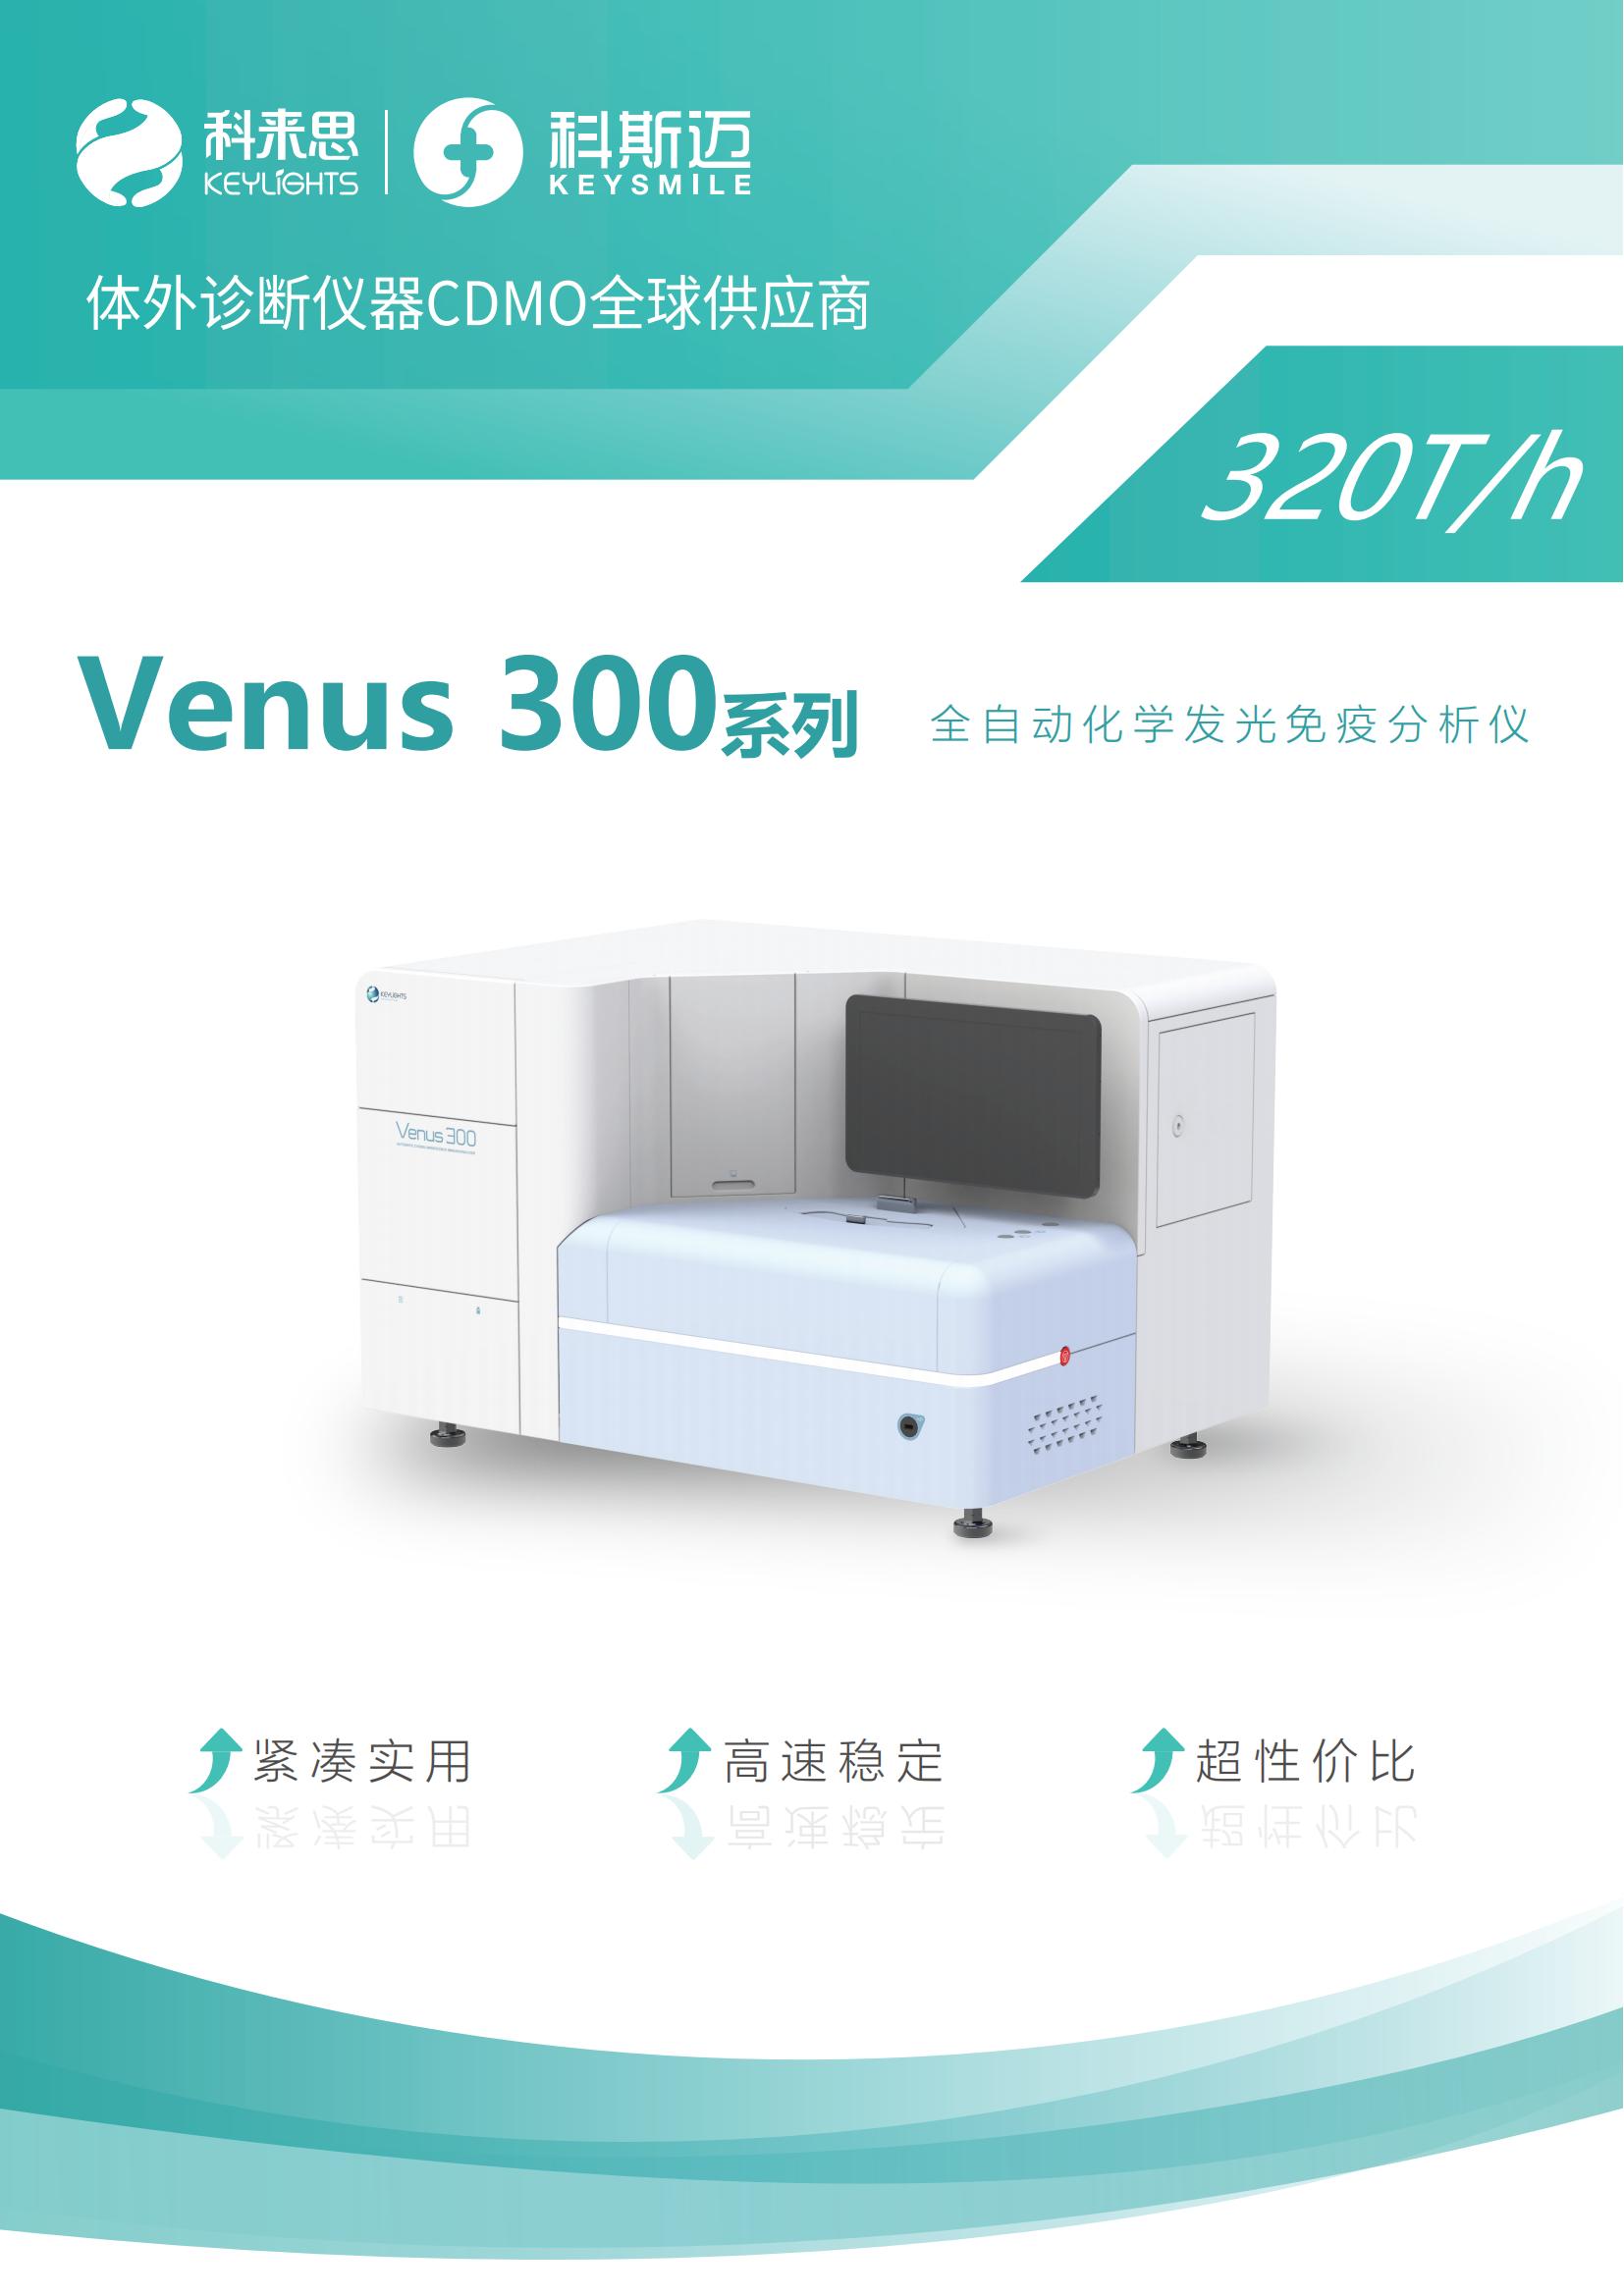 Venus 300